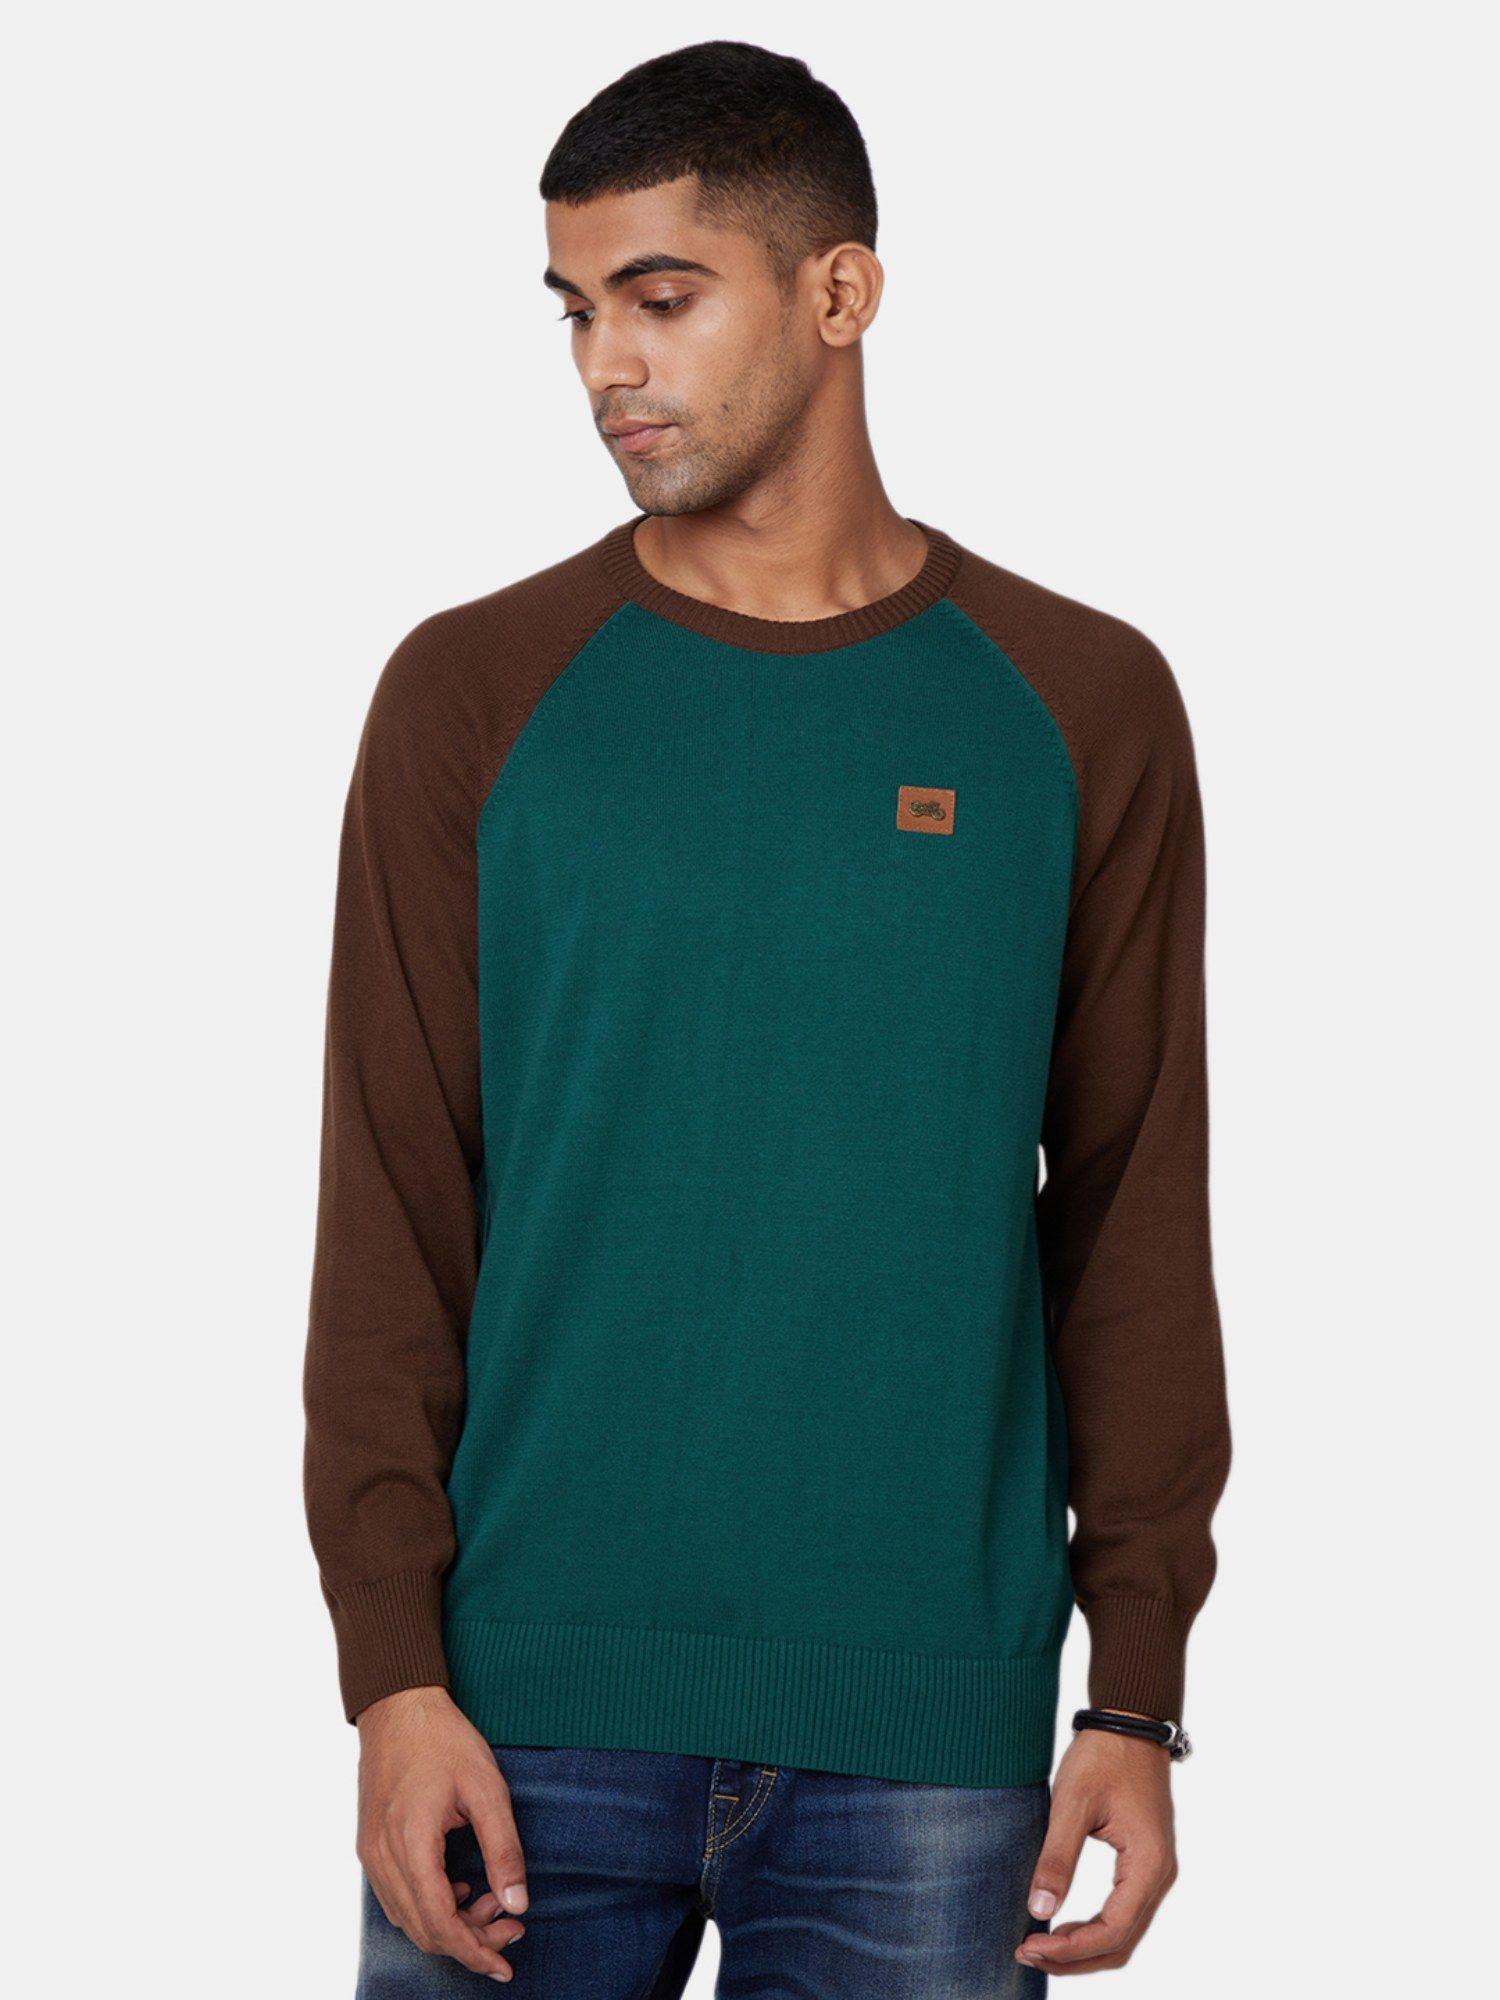 raglan green sweater